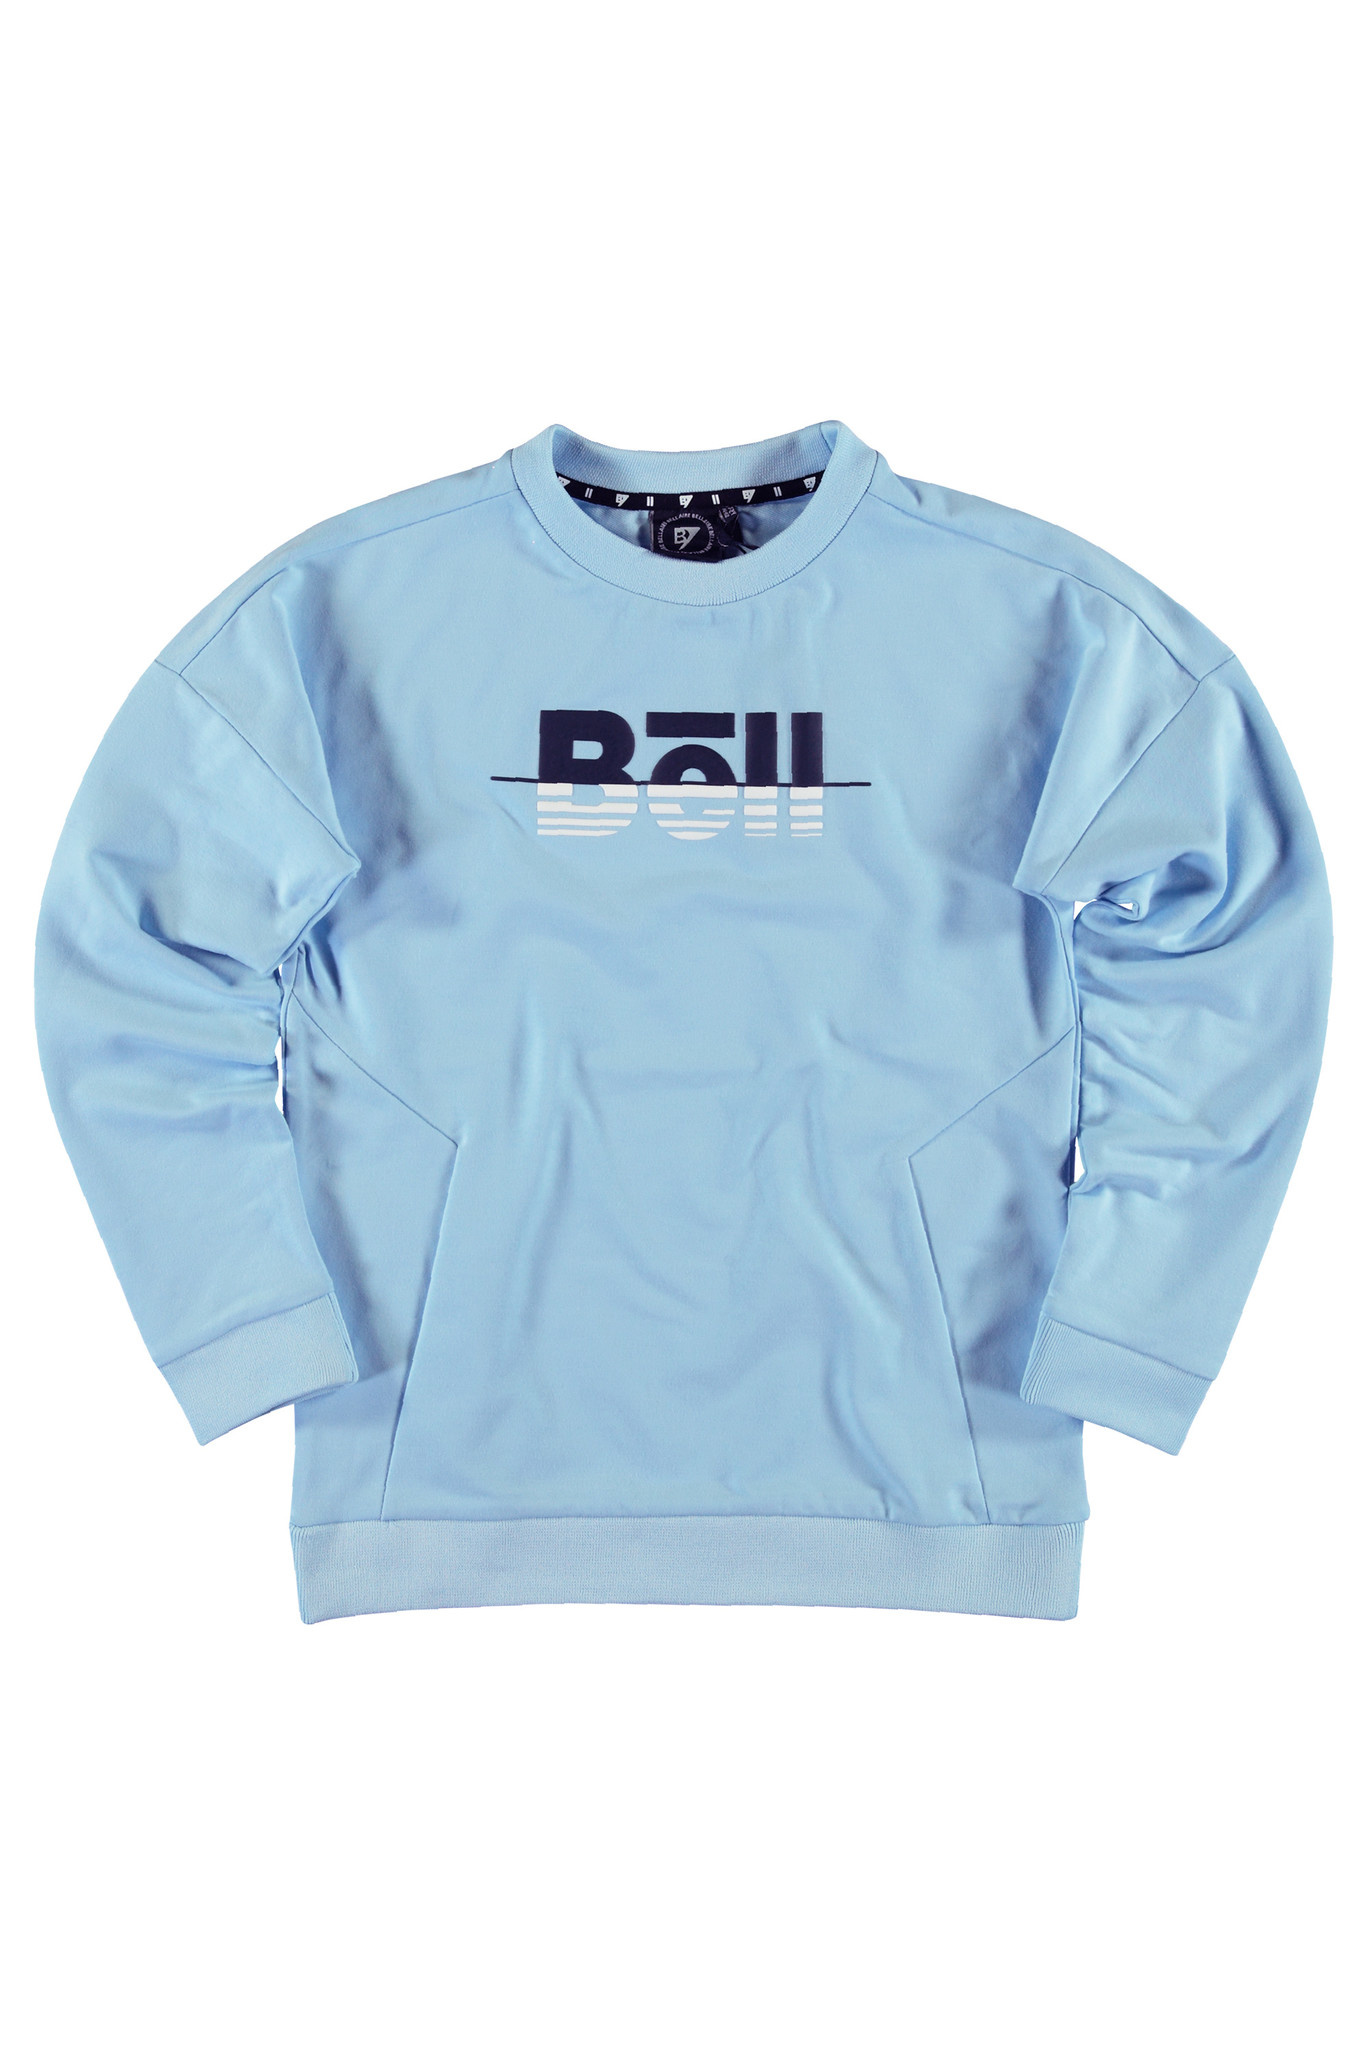 Bellaire jongens sweater met ronde nek Angel Falls - Maat 128